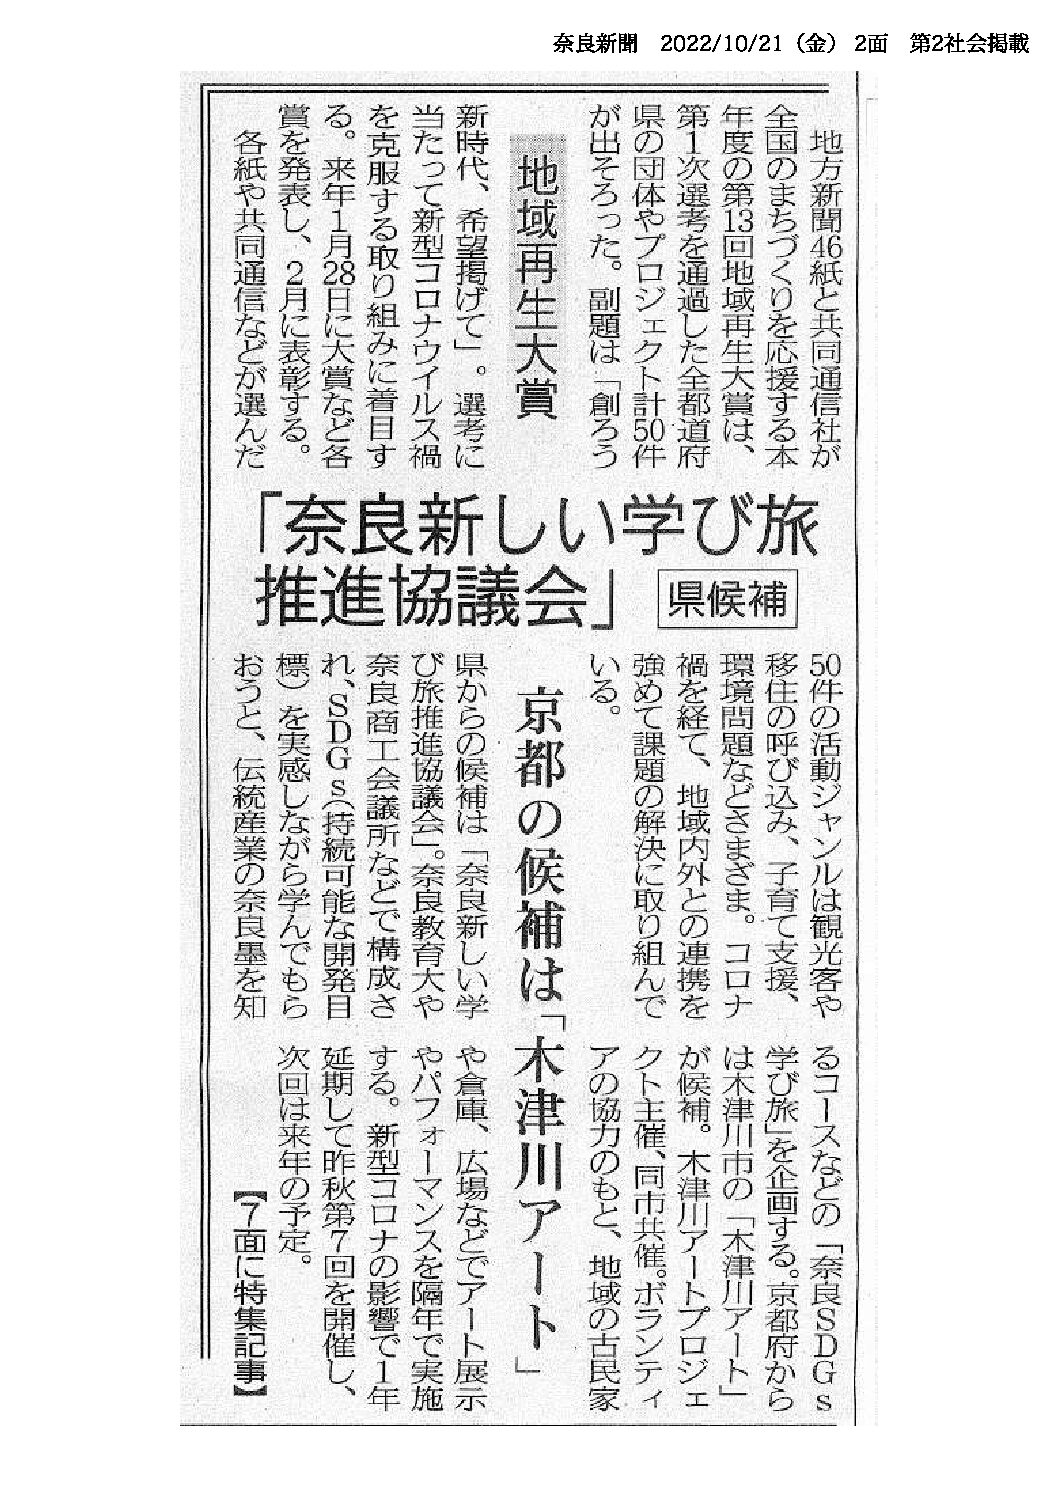 奈良SDGs学び旅が「地域再生大賞」奈良県候補としてノミネートされました。